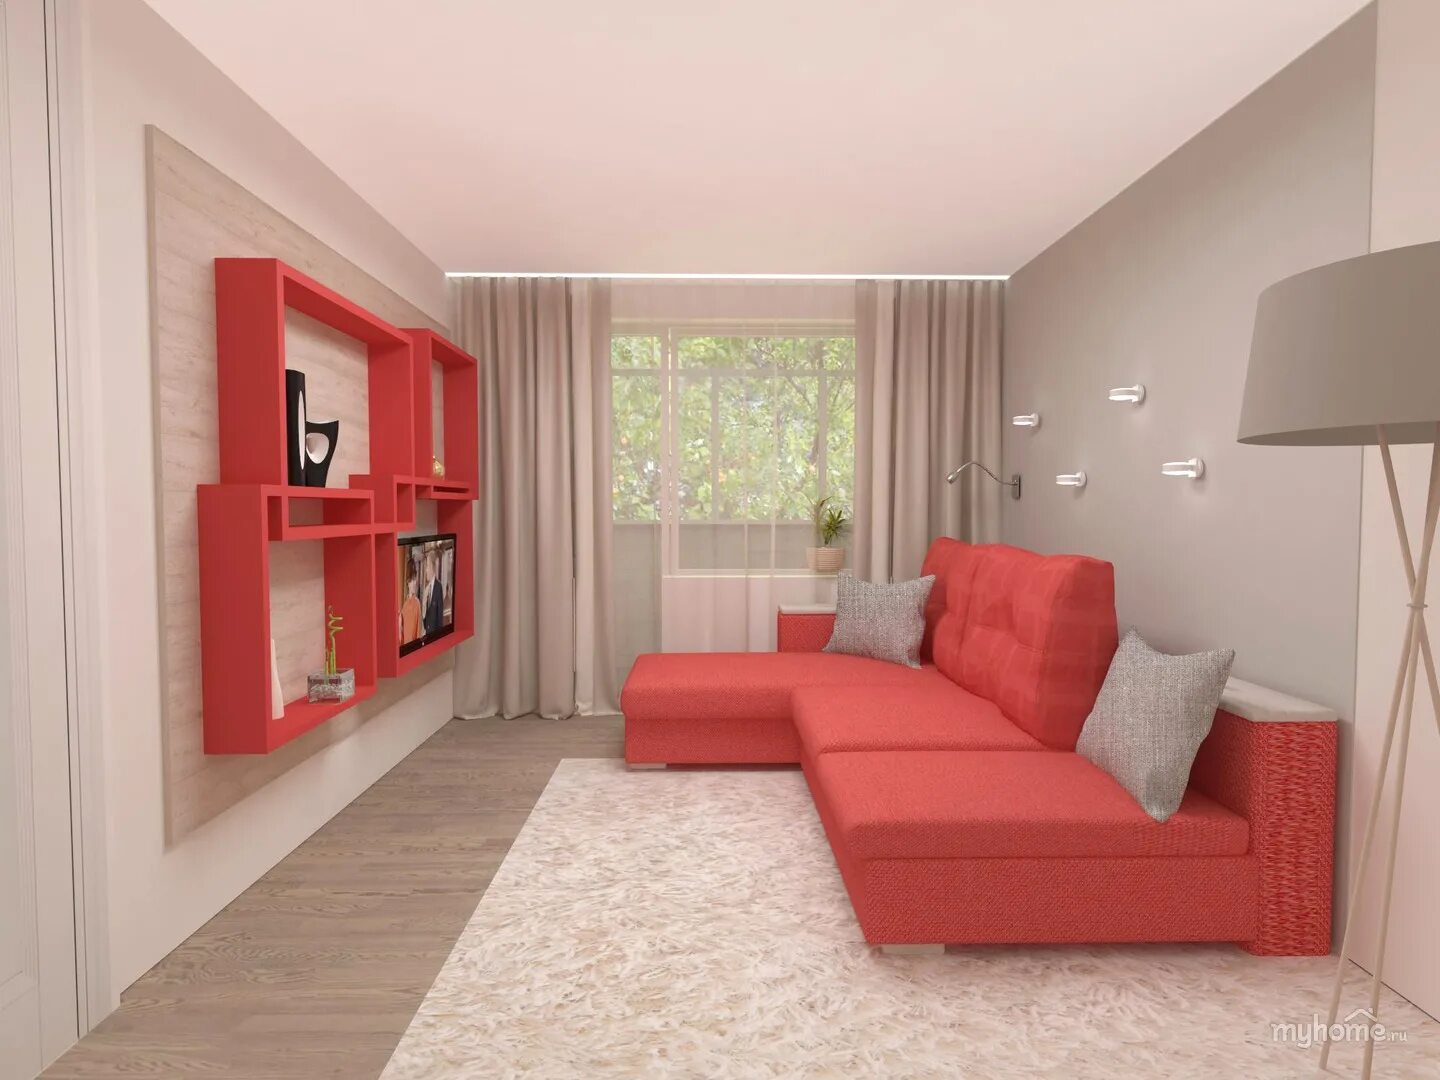 Мебель в 18 кв комнату. Интерьер комнаты с красным диваном. Интерьер однокомнатной квартиры в Красном. Интерьер комнаты в однокомнатной квартире. Красный диван в интерьере маленькой комнаты.